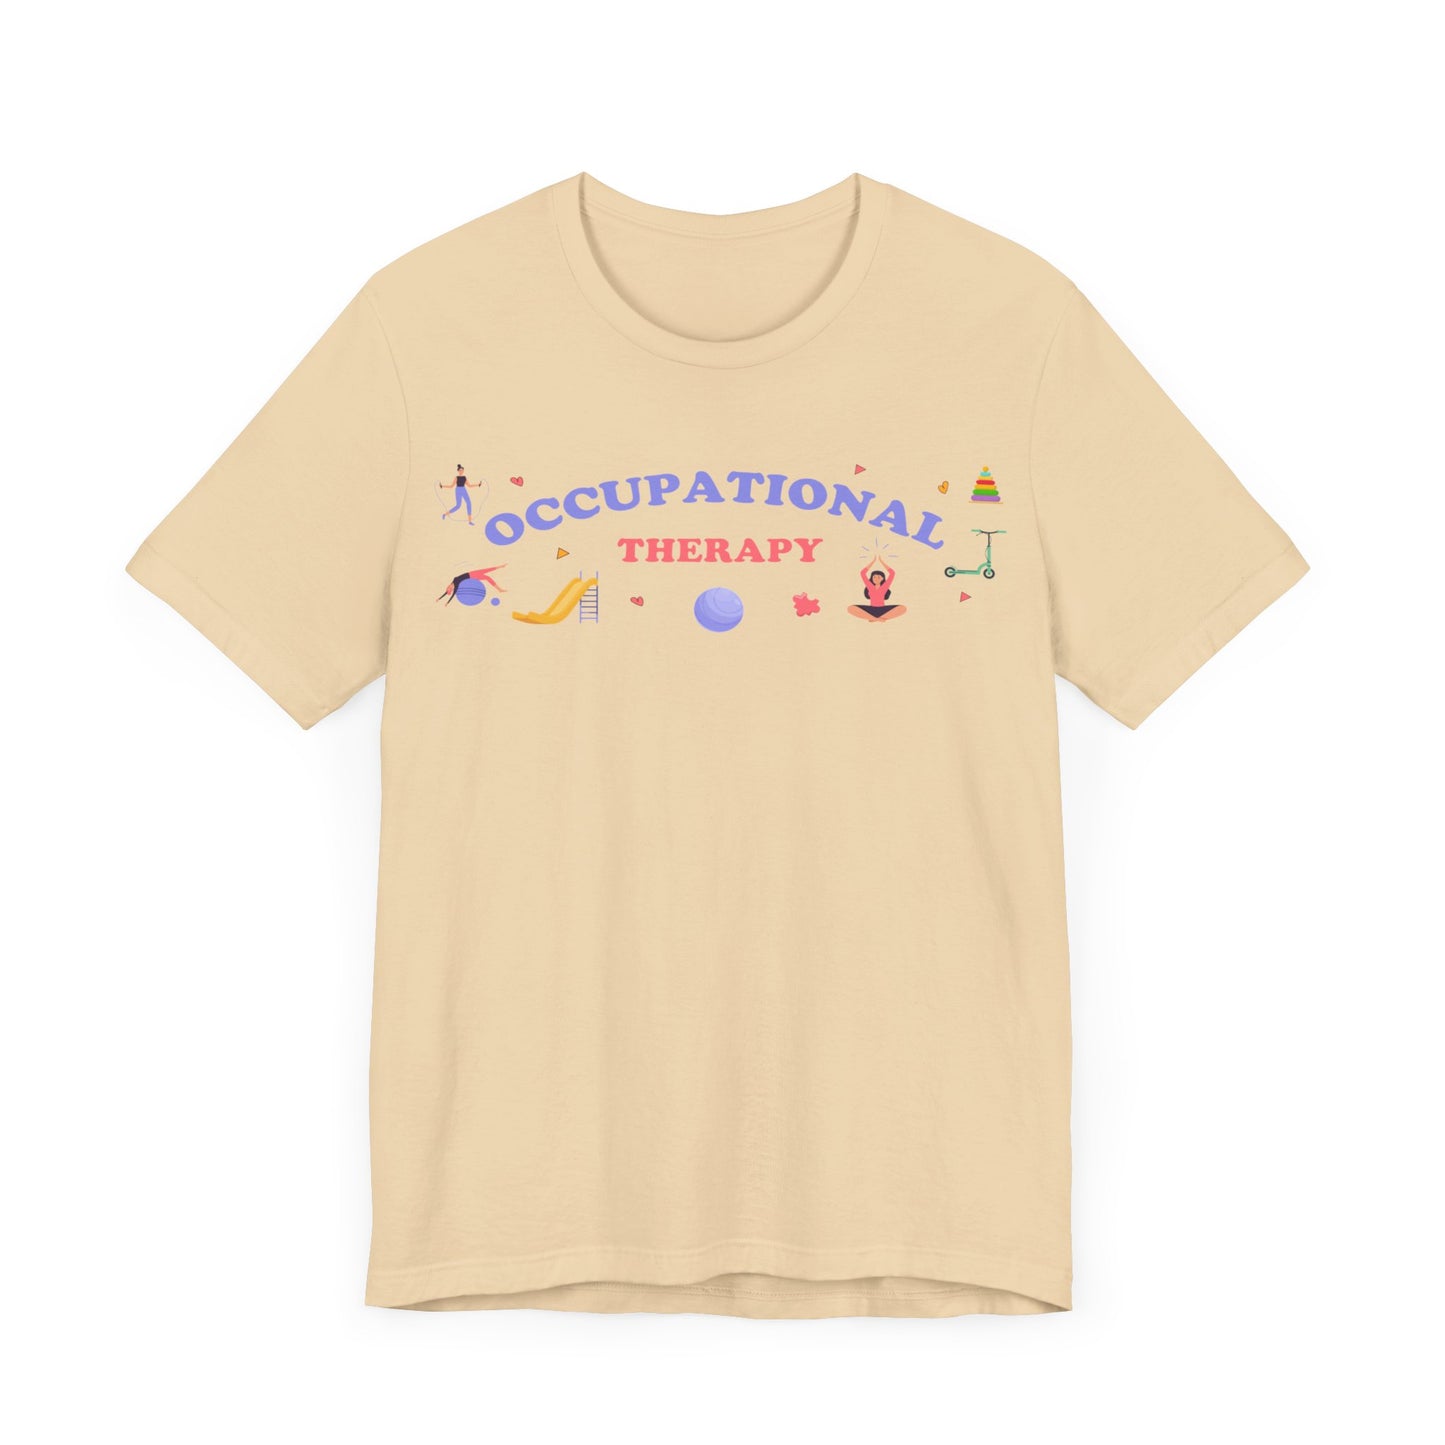 Occupational Therapy Shirt, OT Shirt, Therapist Shirt